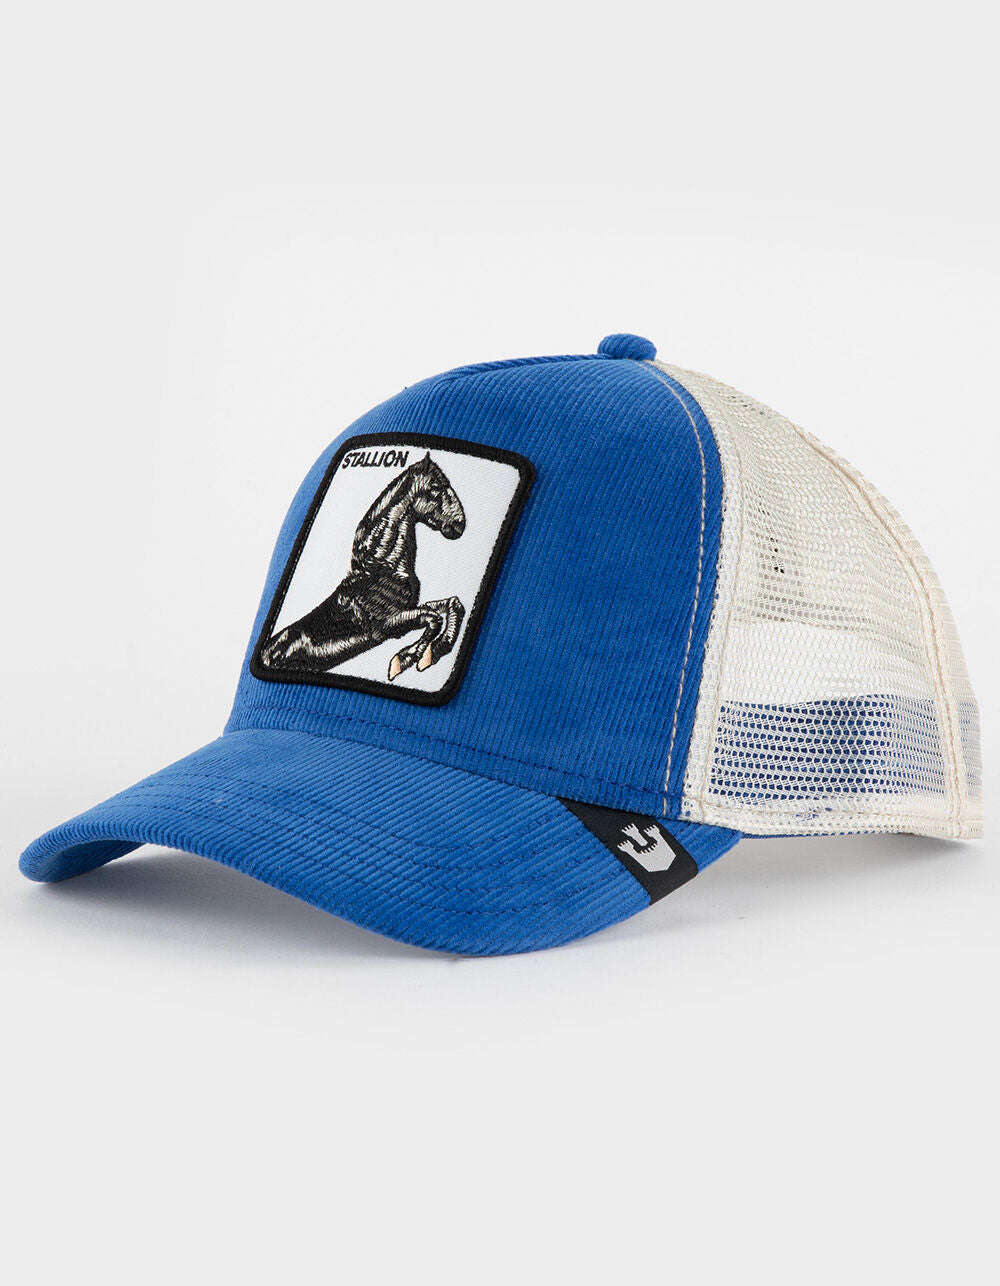 Sly Stallione Blue Trucker Hat - Goorin Bros